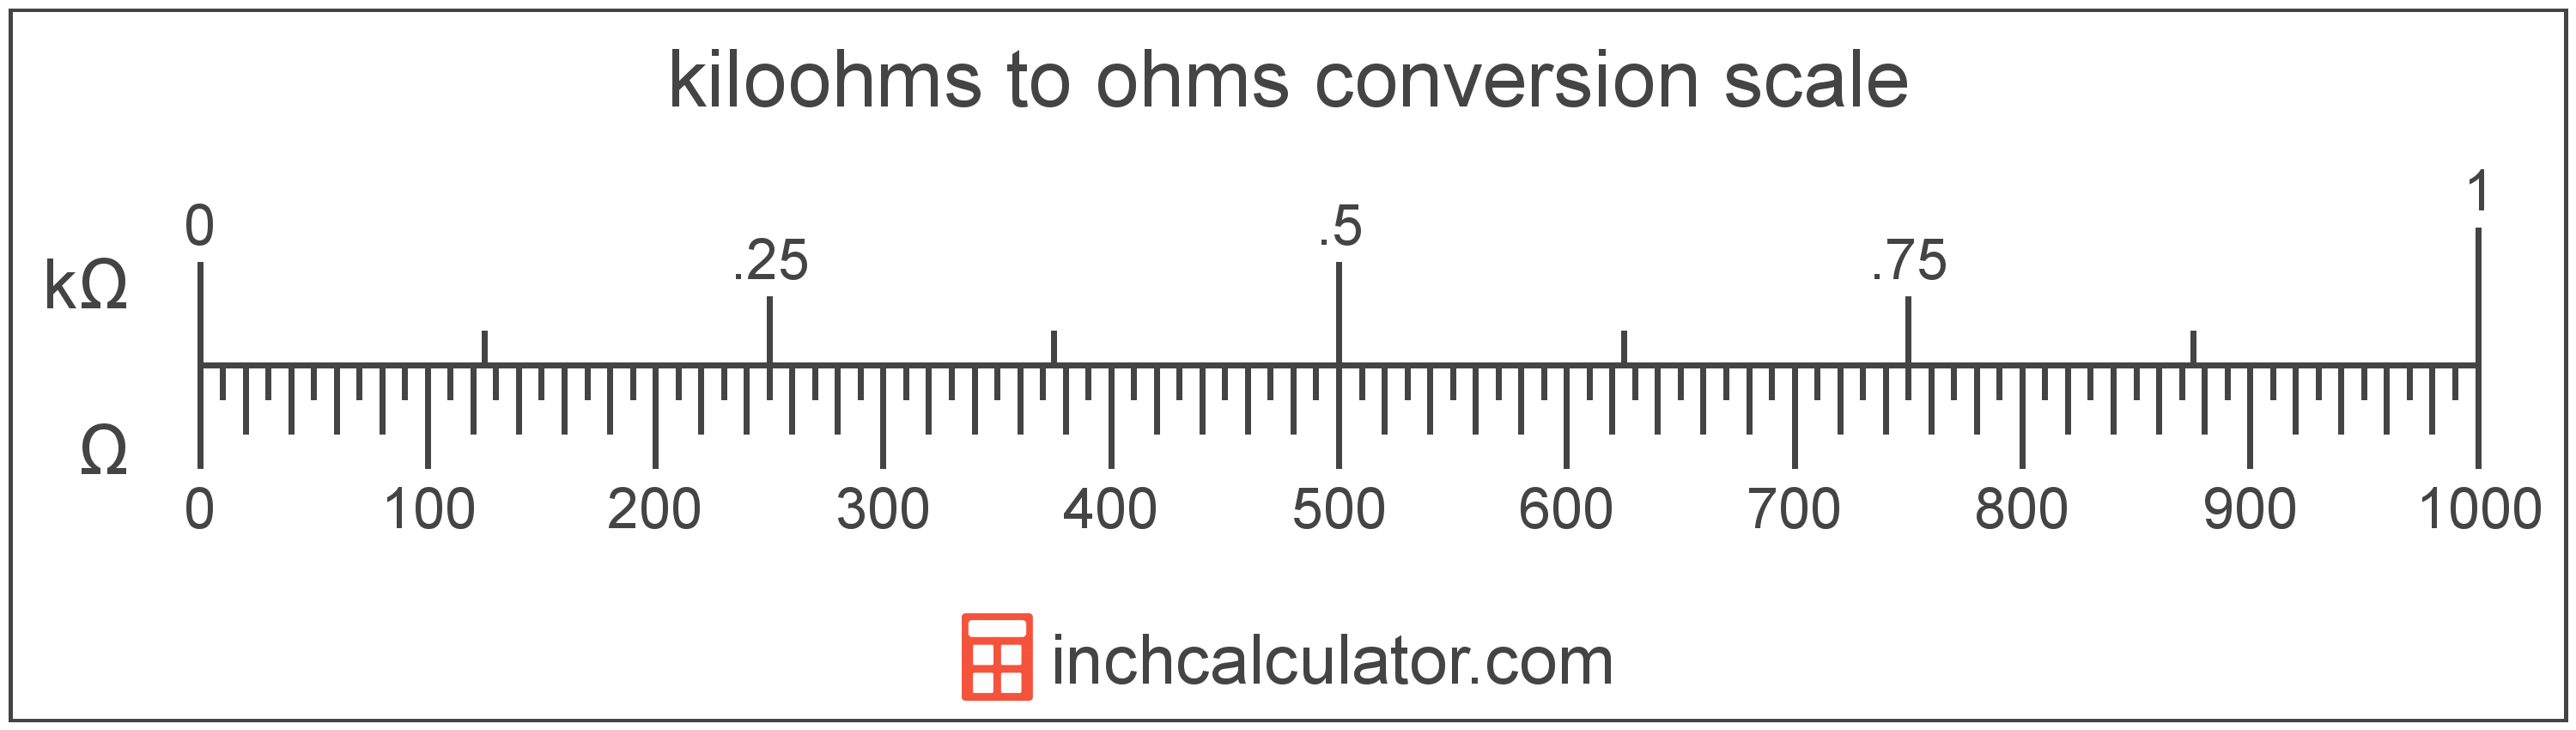 Ohms Measurement Chart